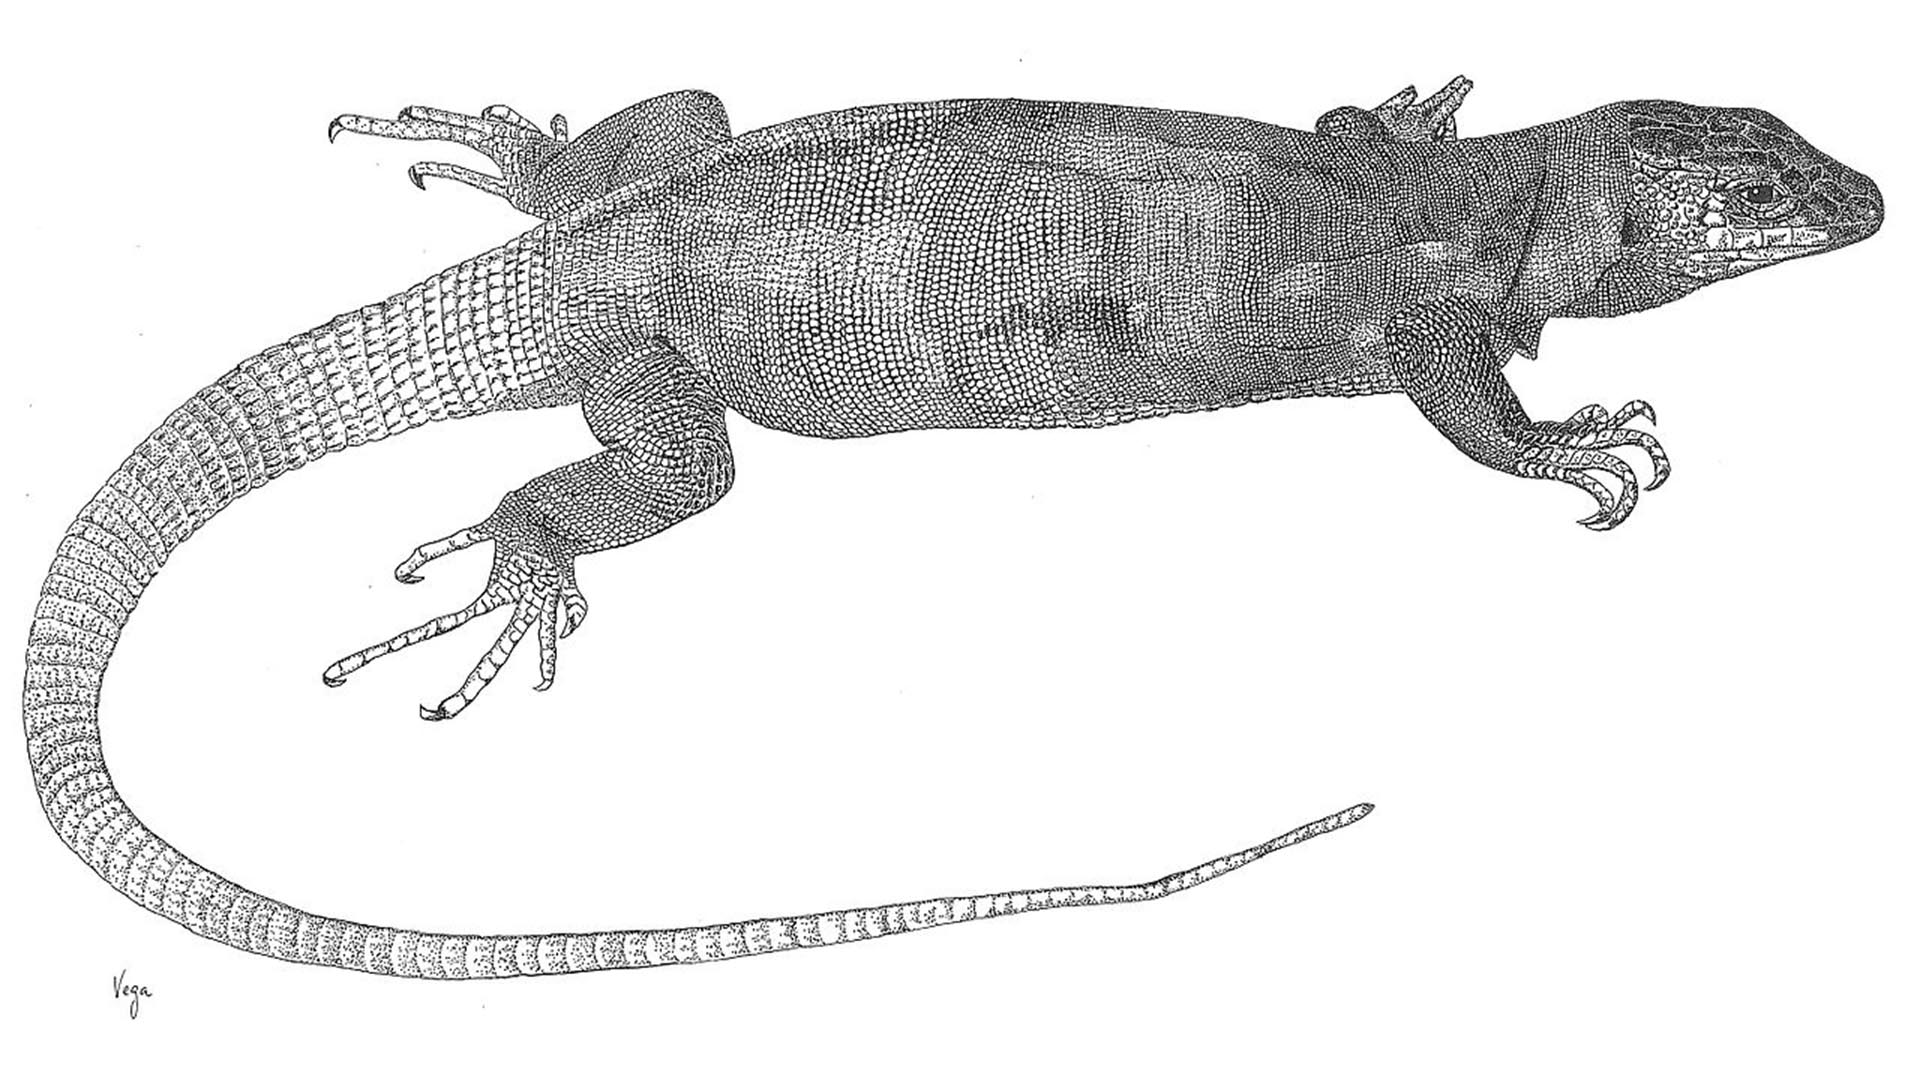 Gallotia simonyi aka El lagarto gigante de El Hierro.